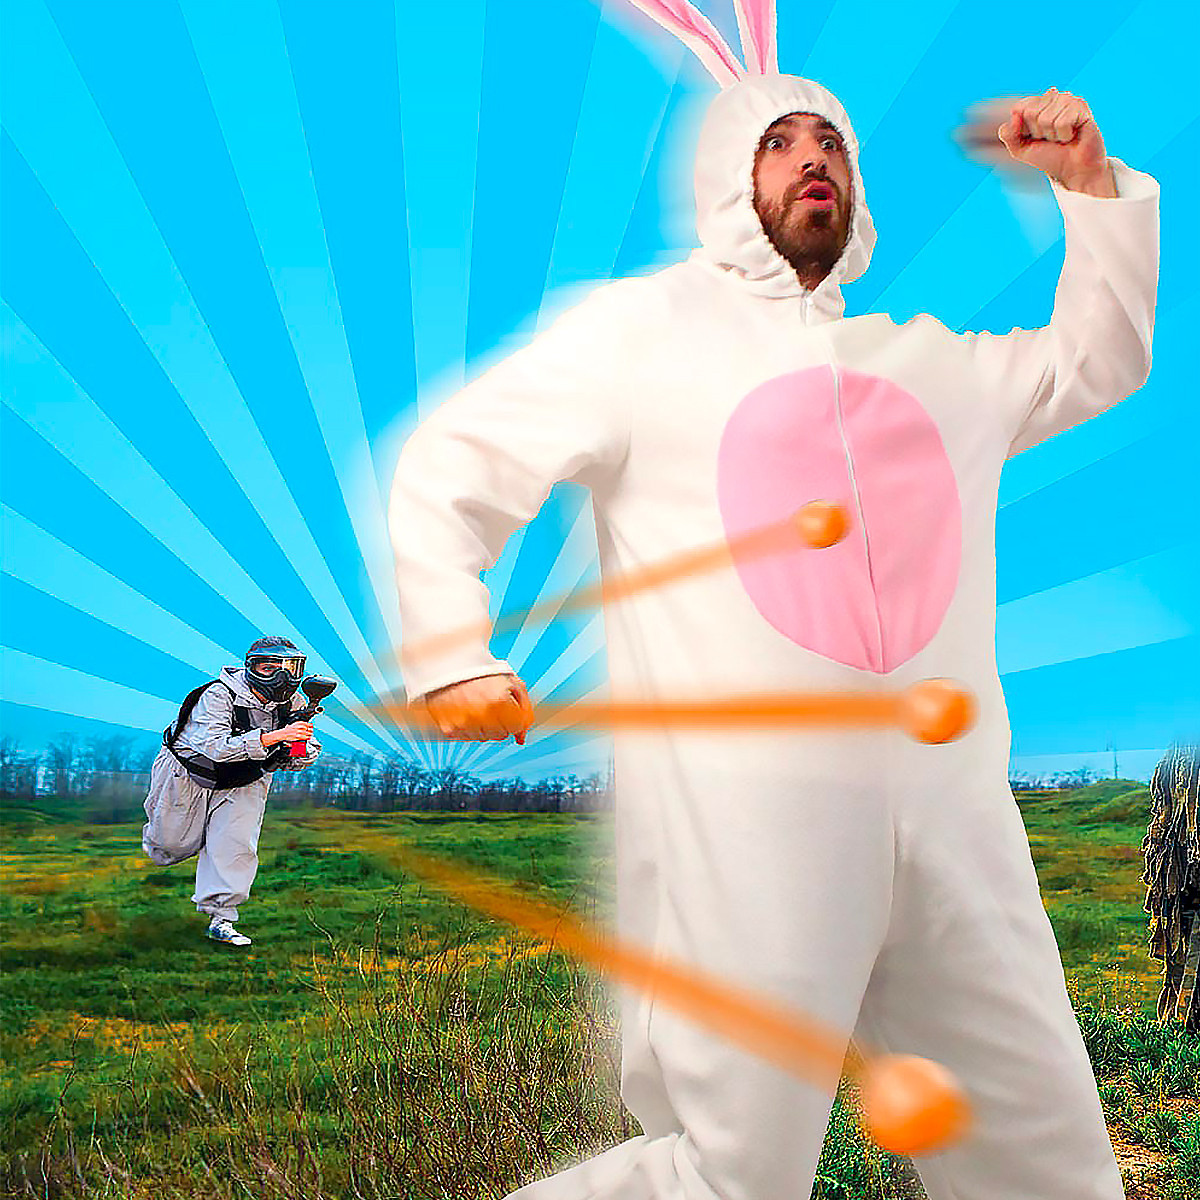 Costume super lapin, un déguisement de Lapin hilarant - 29,65 €